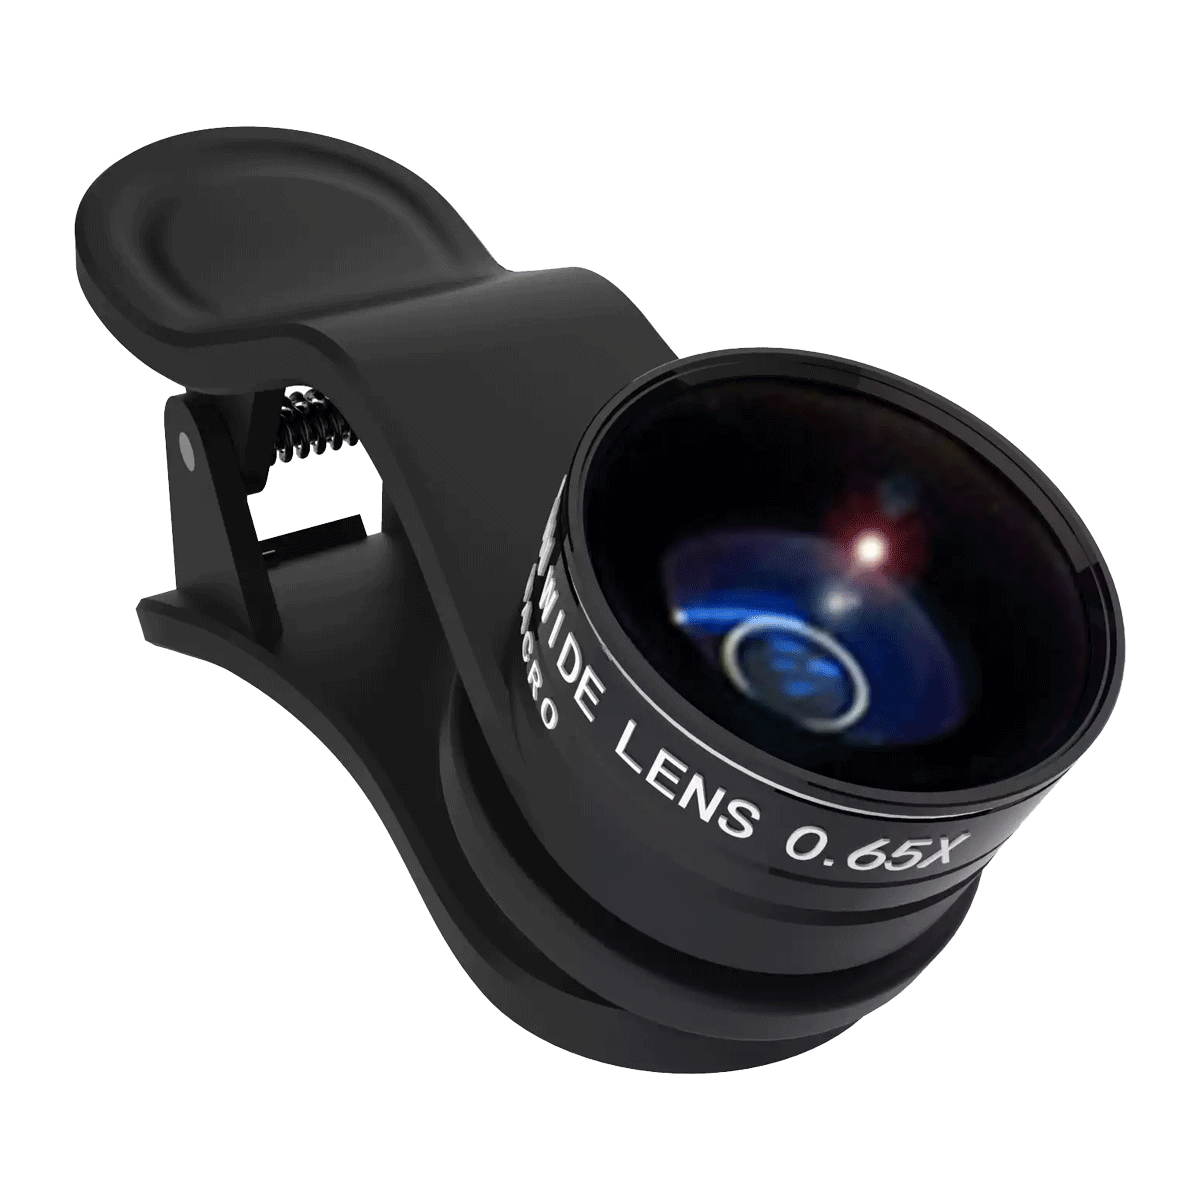 Juego de 2 lentes Kenko Real Pro Clip Lens 0.65x (120°) / Macro, para celulares